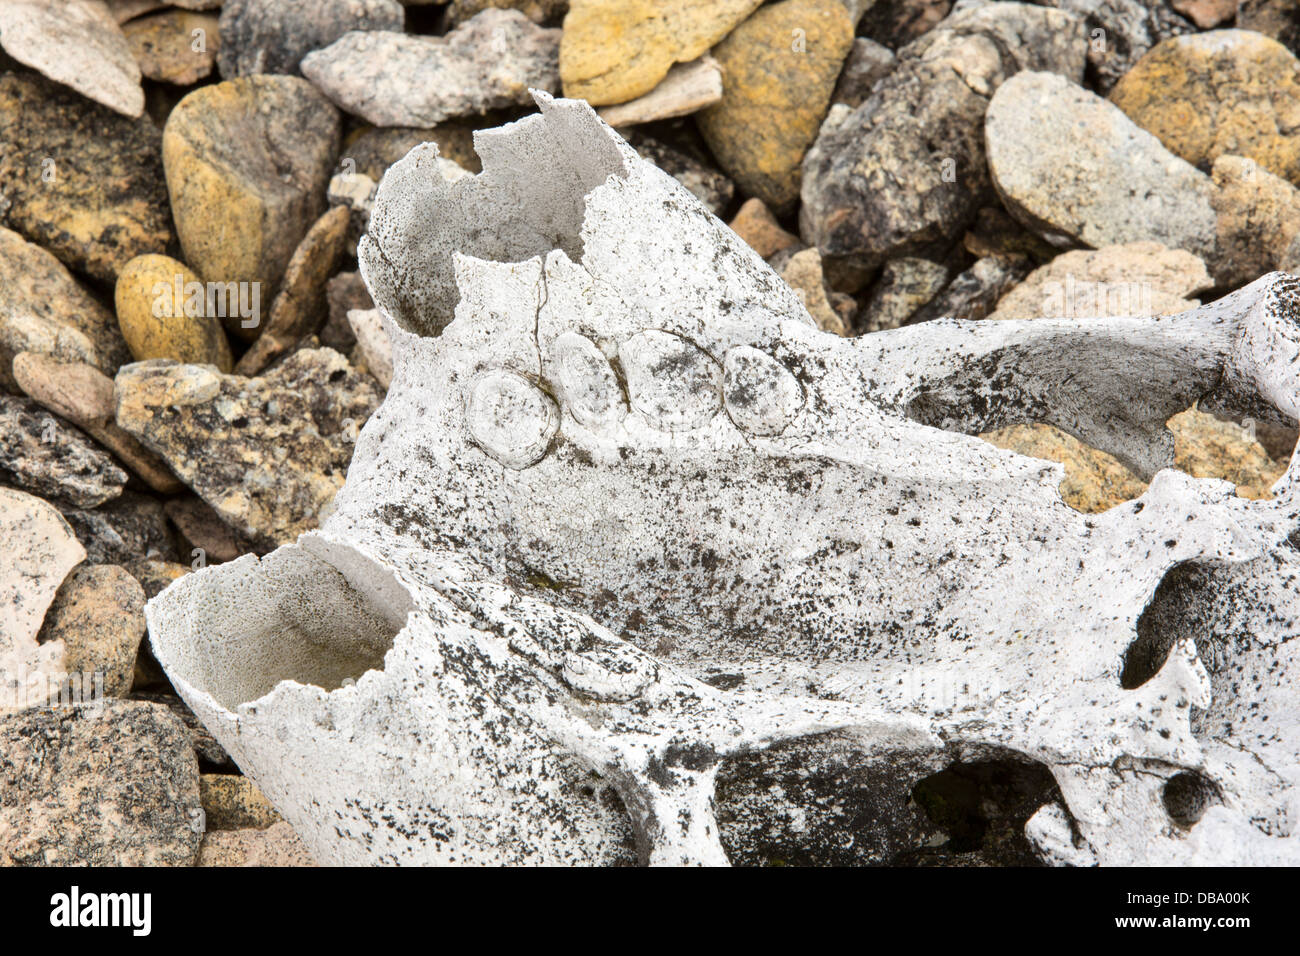 Am alten Walross Schädel auf einem erhöhten Strand bei Vibebukta 79 ° 22 ' 22 n ° 36' e, Nordaustlandet, Spitzbergen, Svalbard. Stockfoto